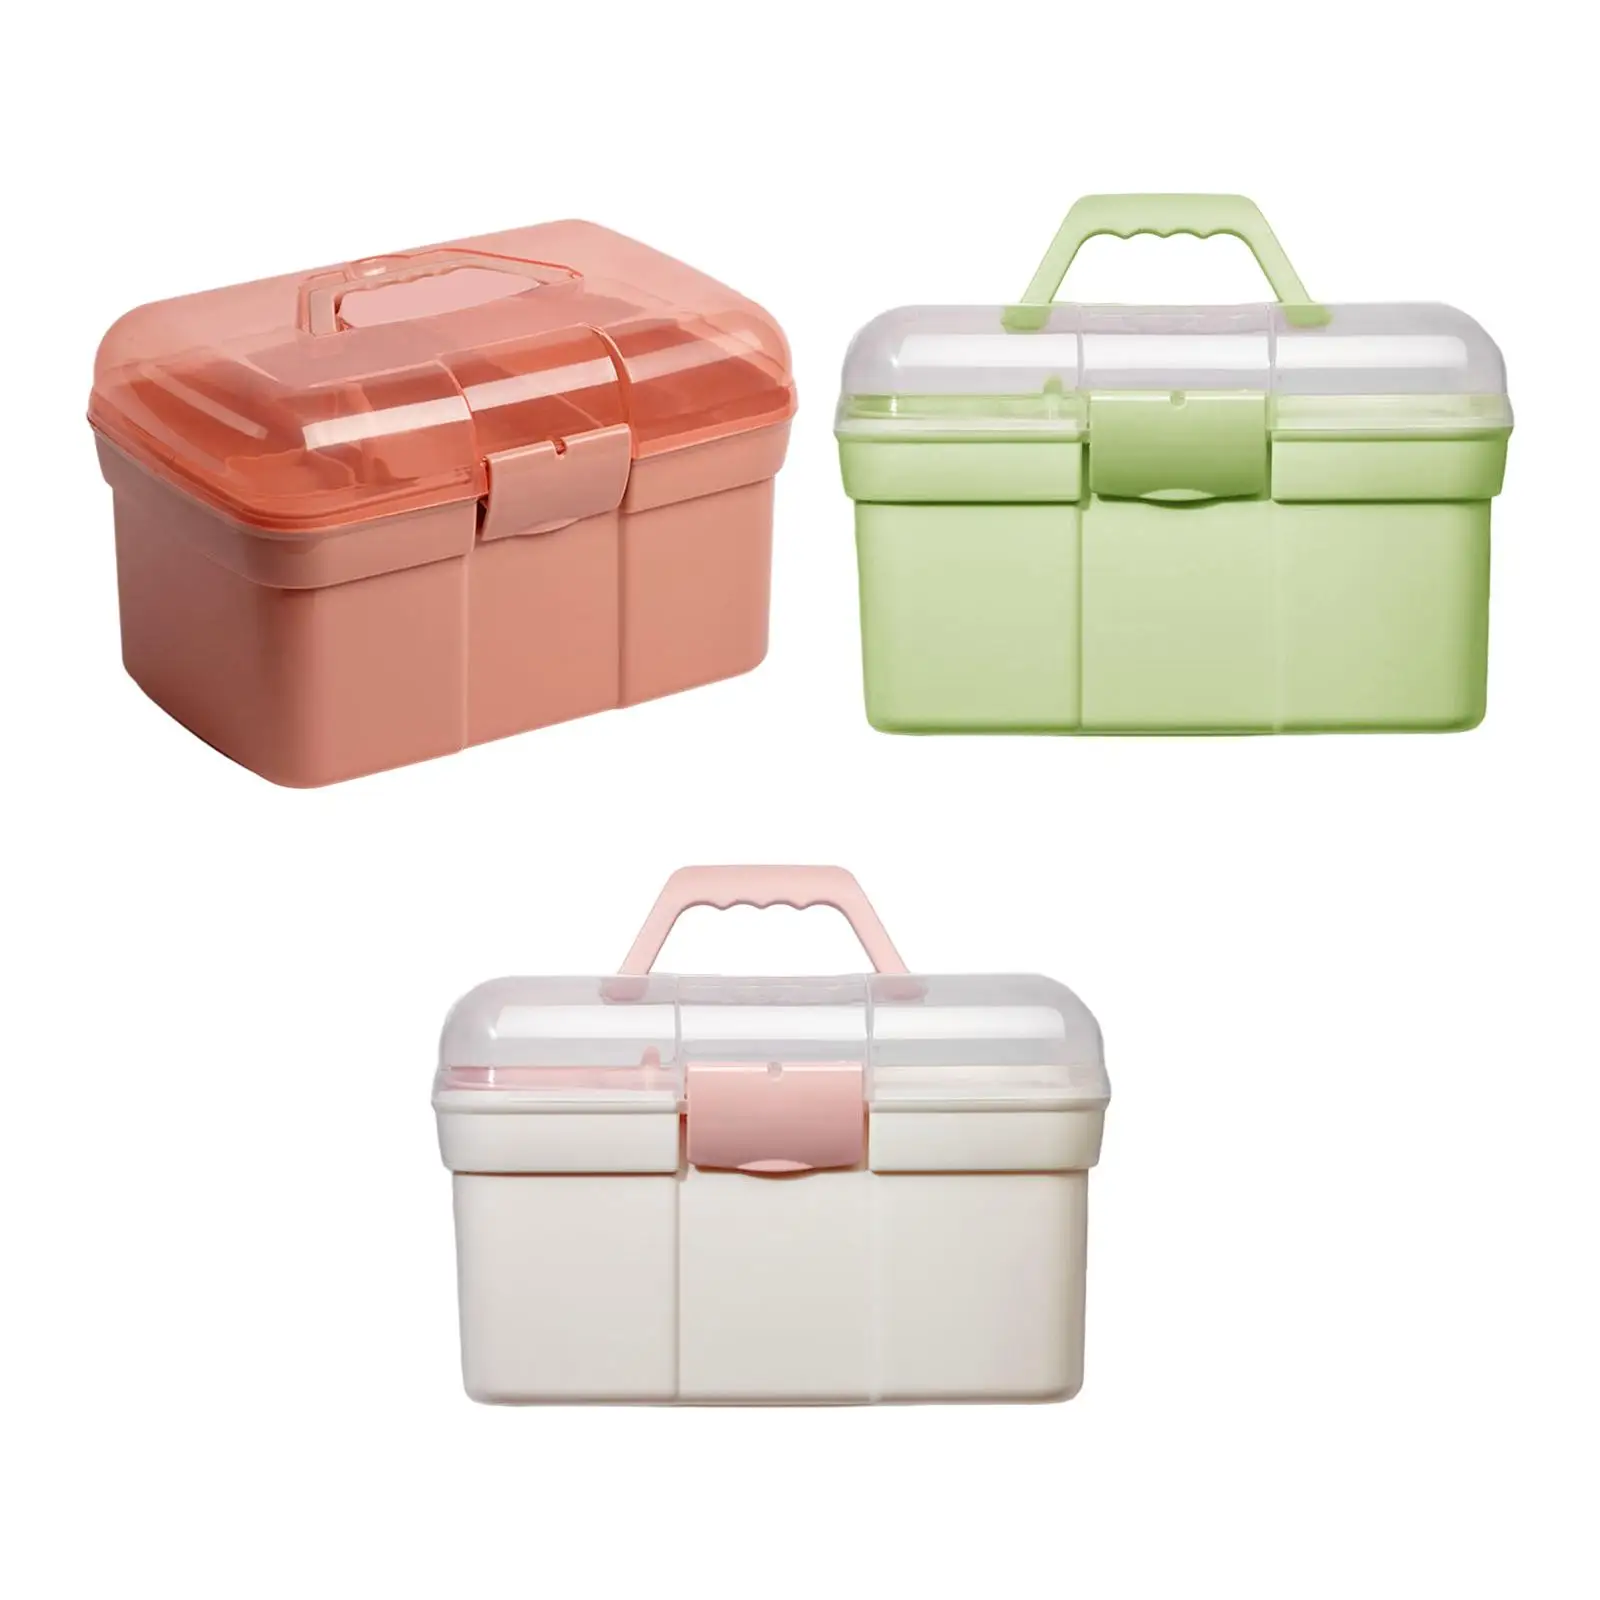 Portable Handled Storage Box 2 Tier Nail Polish Organizer Sewing Box for Nail Kits Makeup Sewing Manicure Tools Art Supply